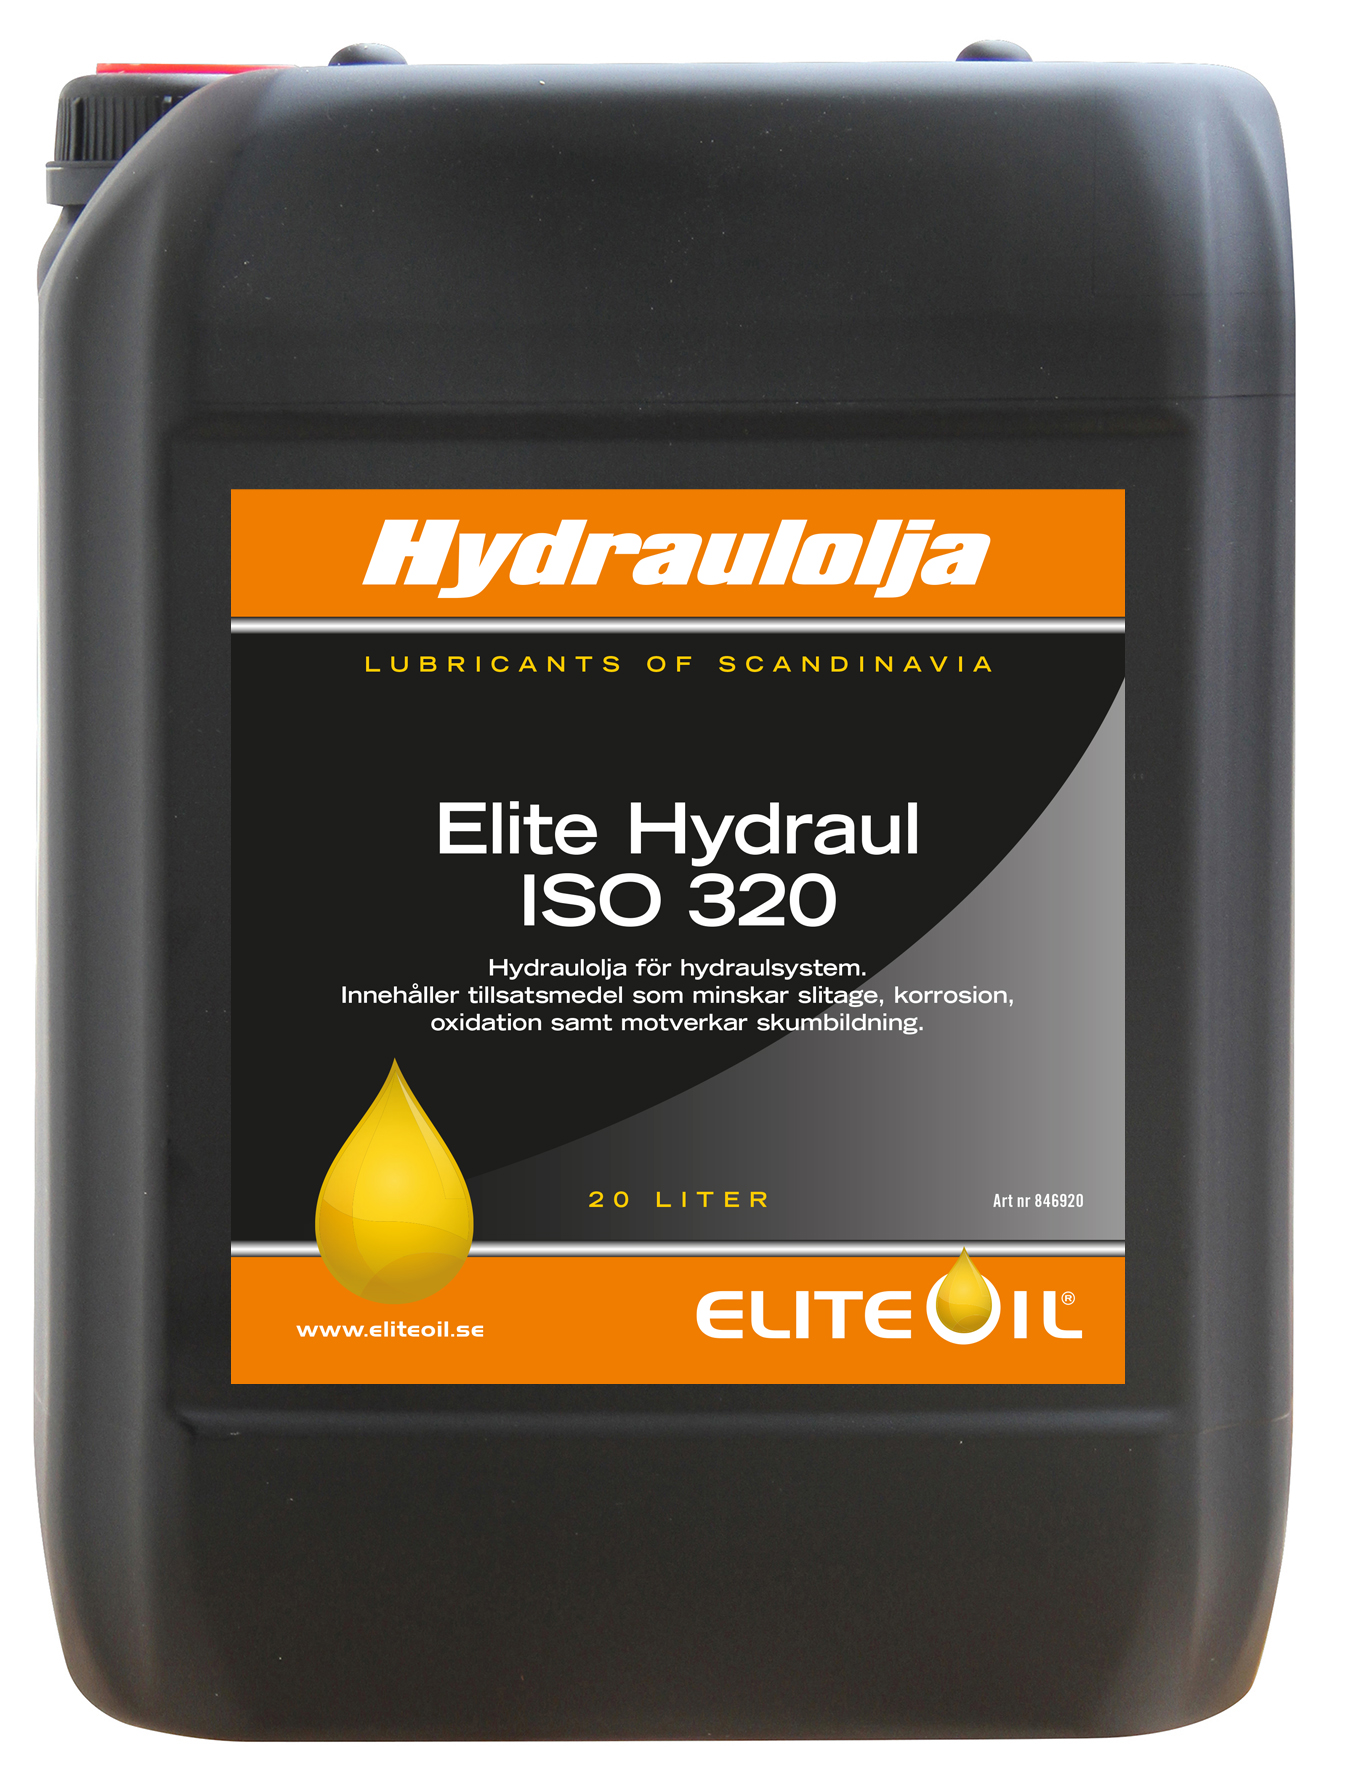 Elite Hydraul ISO 320, 20 liter dunk